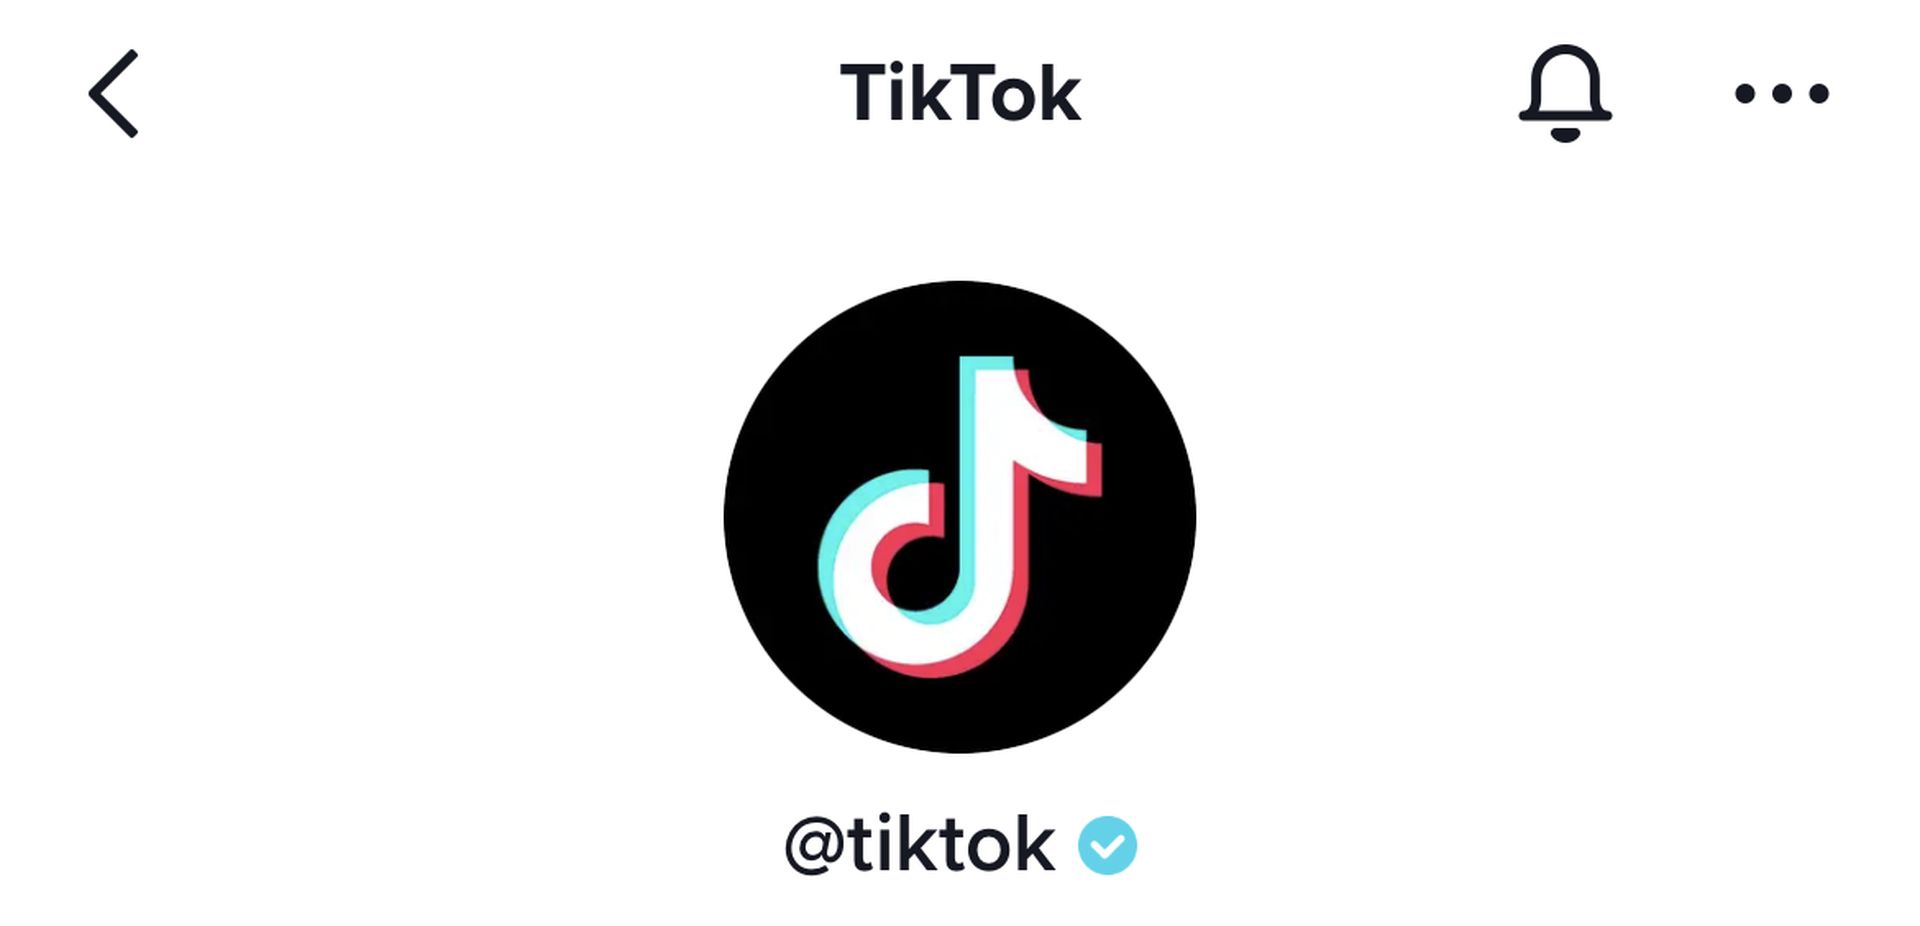 How to get TikTok blue tick verification?